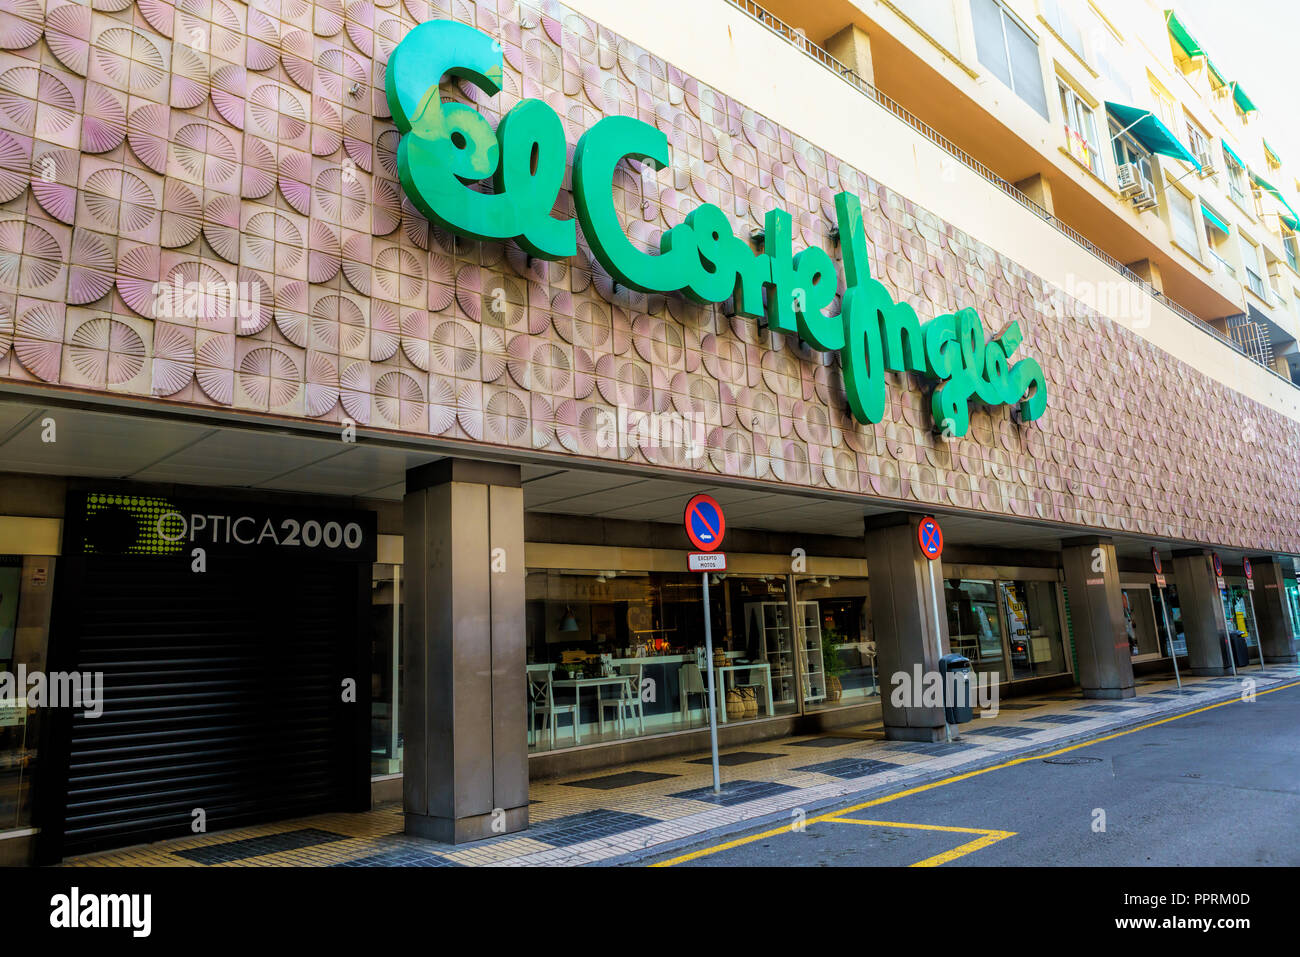 El Corte Inglés Department Stores Luxe, Spain